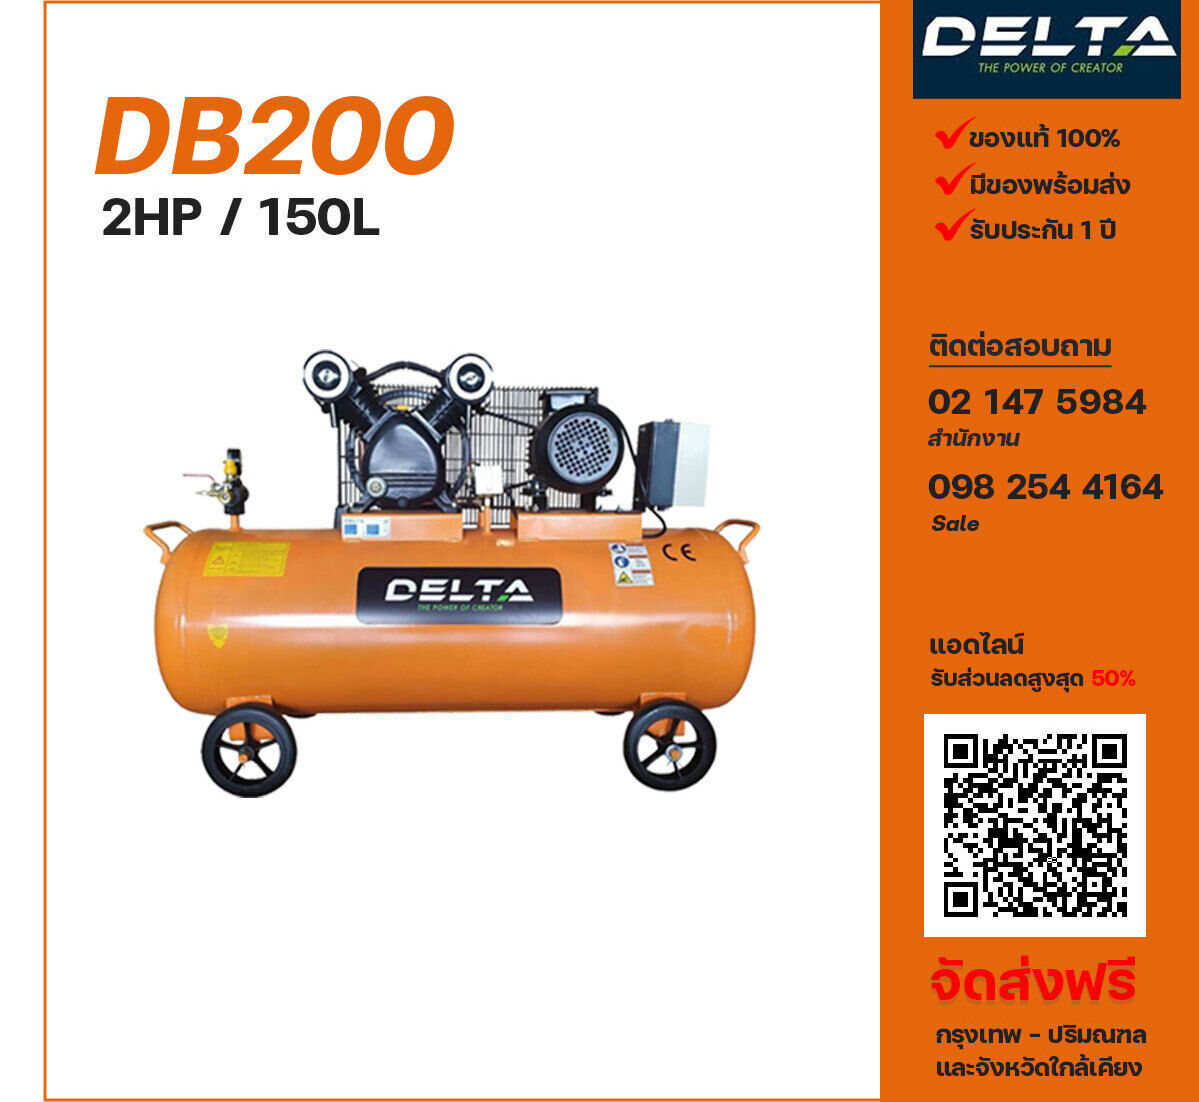 ปั๊มลมเดลต้า DELTA DB200 220V/380V ปั๊มลมลูกสูบ ขนาด 2 สูบ 2 แรงม้า 150 ลิตร DELTA พร้อมมอเตอร์ ไฟ 220V/380V ส่งฟรี กรุงเทพฯ-ปริมณฑล รับประกัน 1 ปี